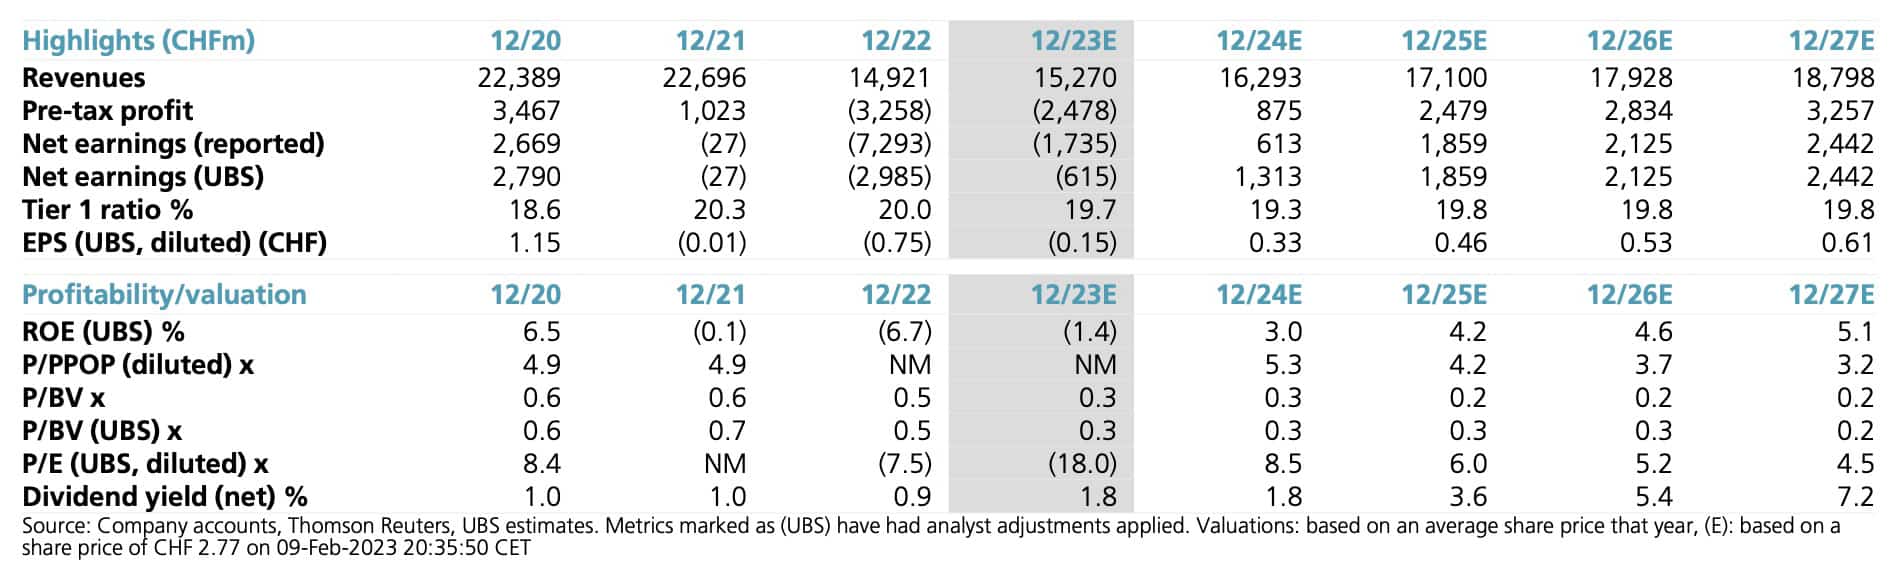 Credit Suisse estimates